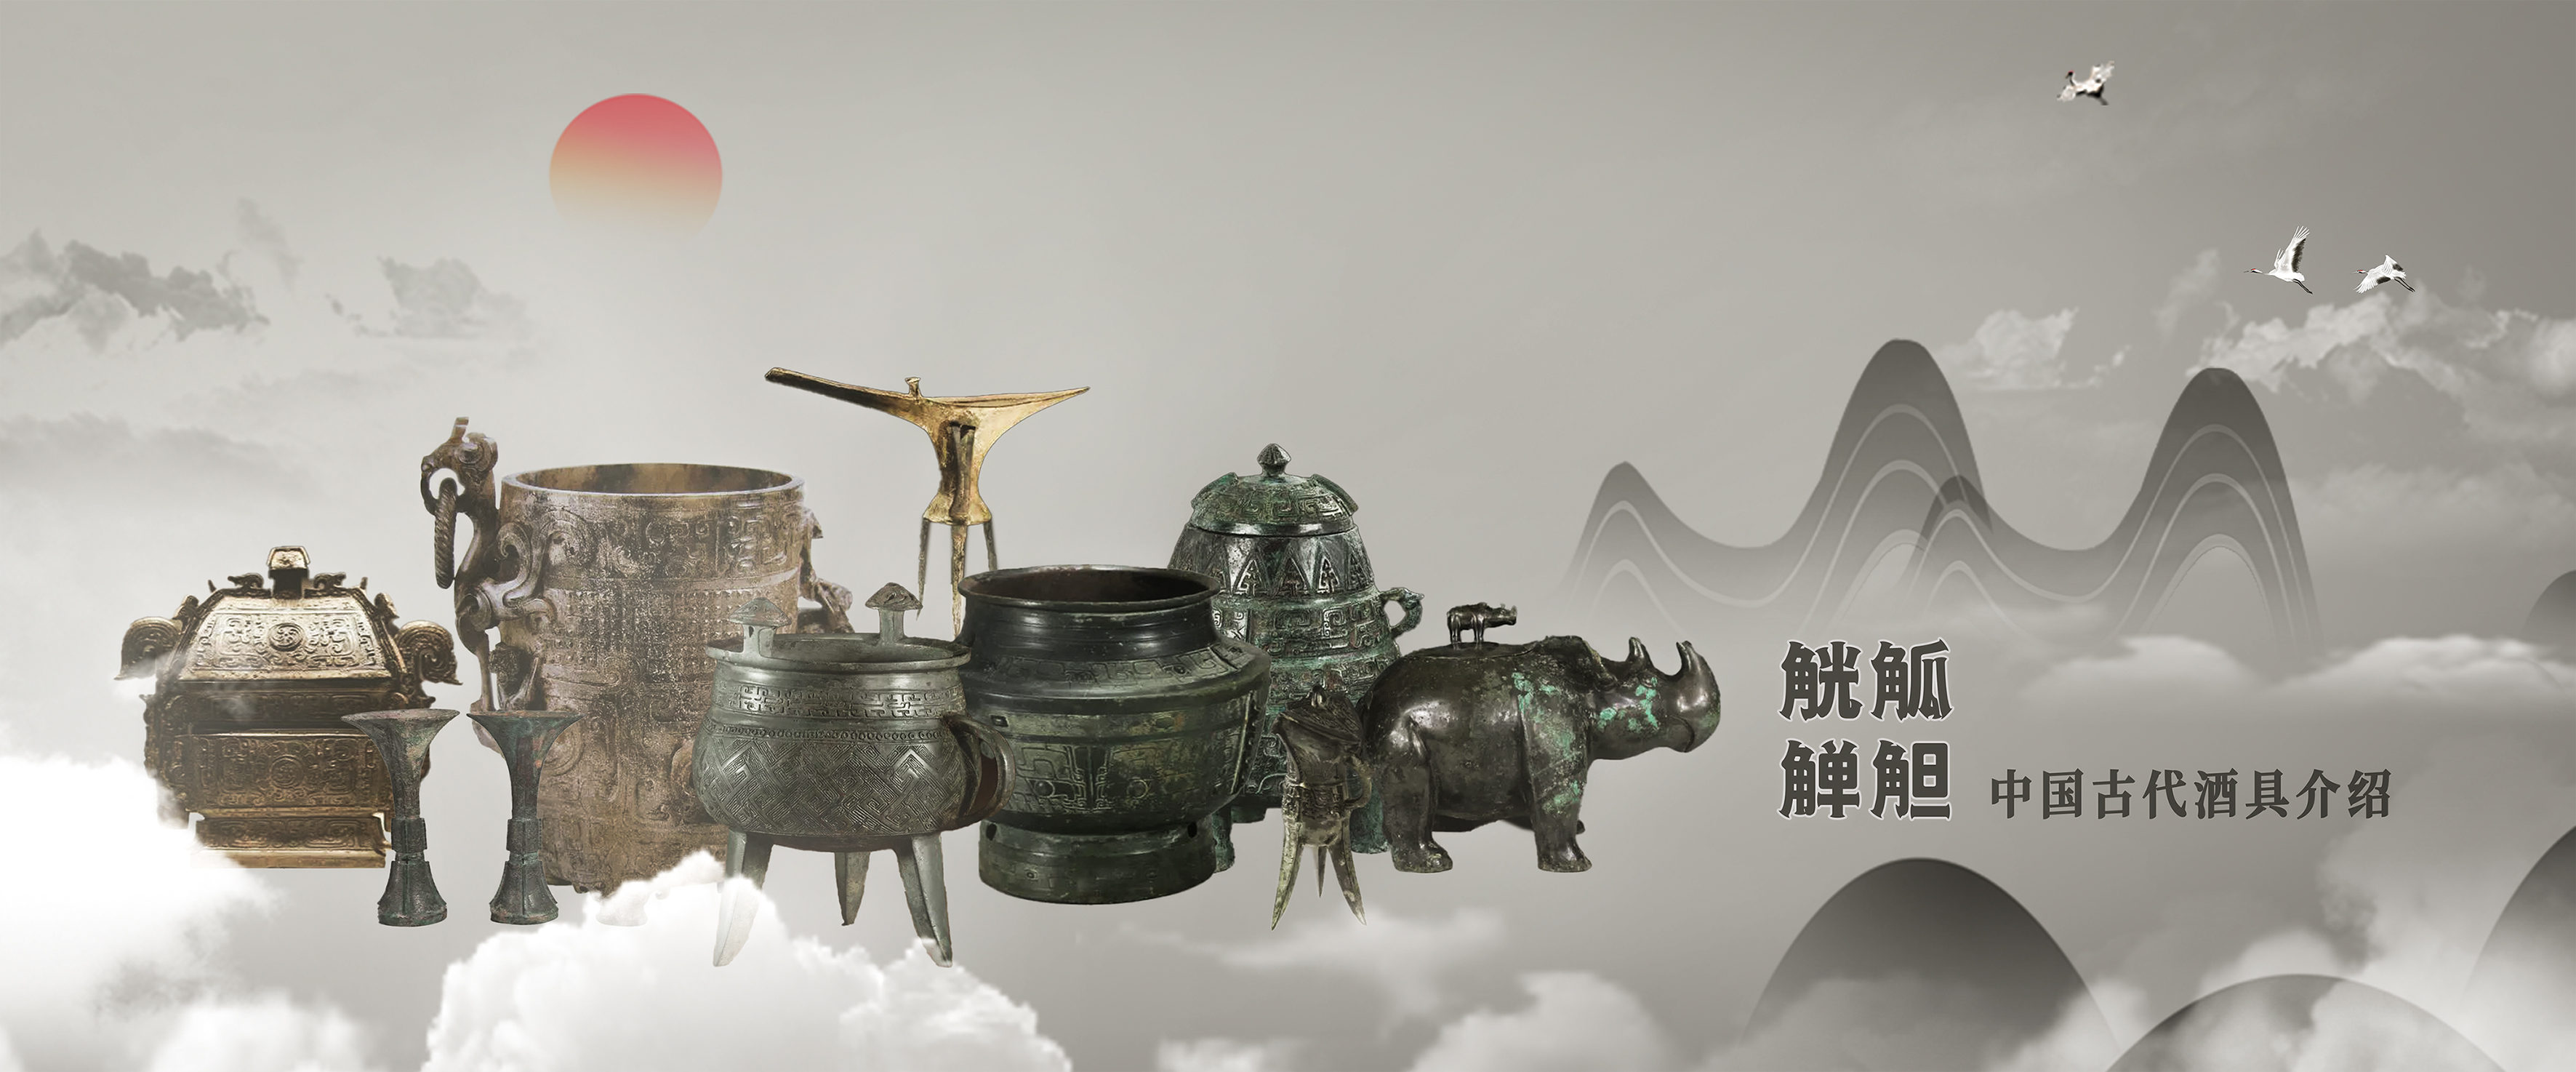 觥觚觯觛 中国古代酒具名称集锦